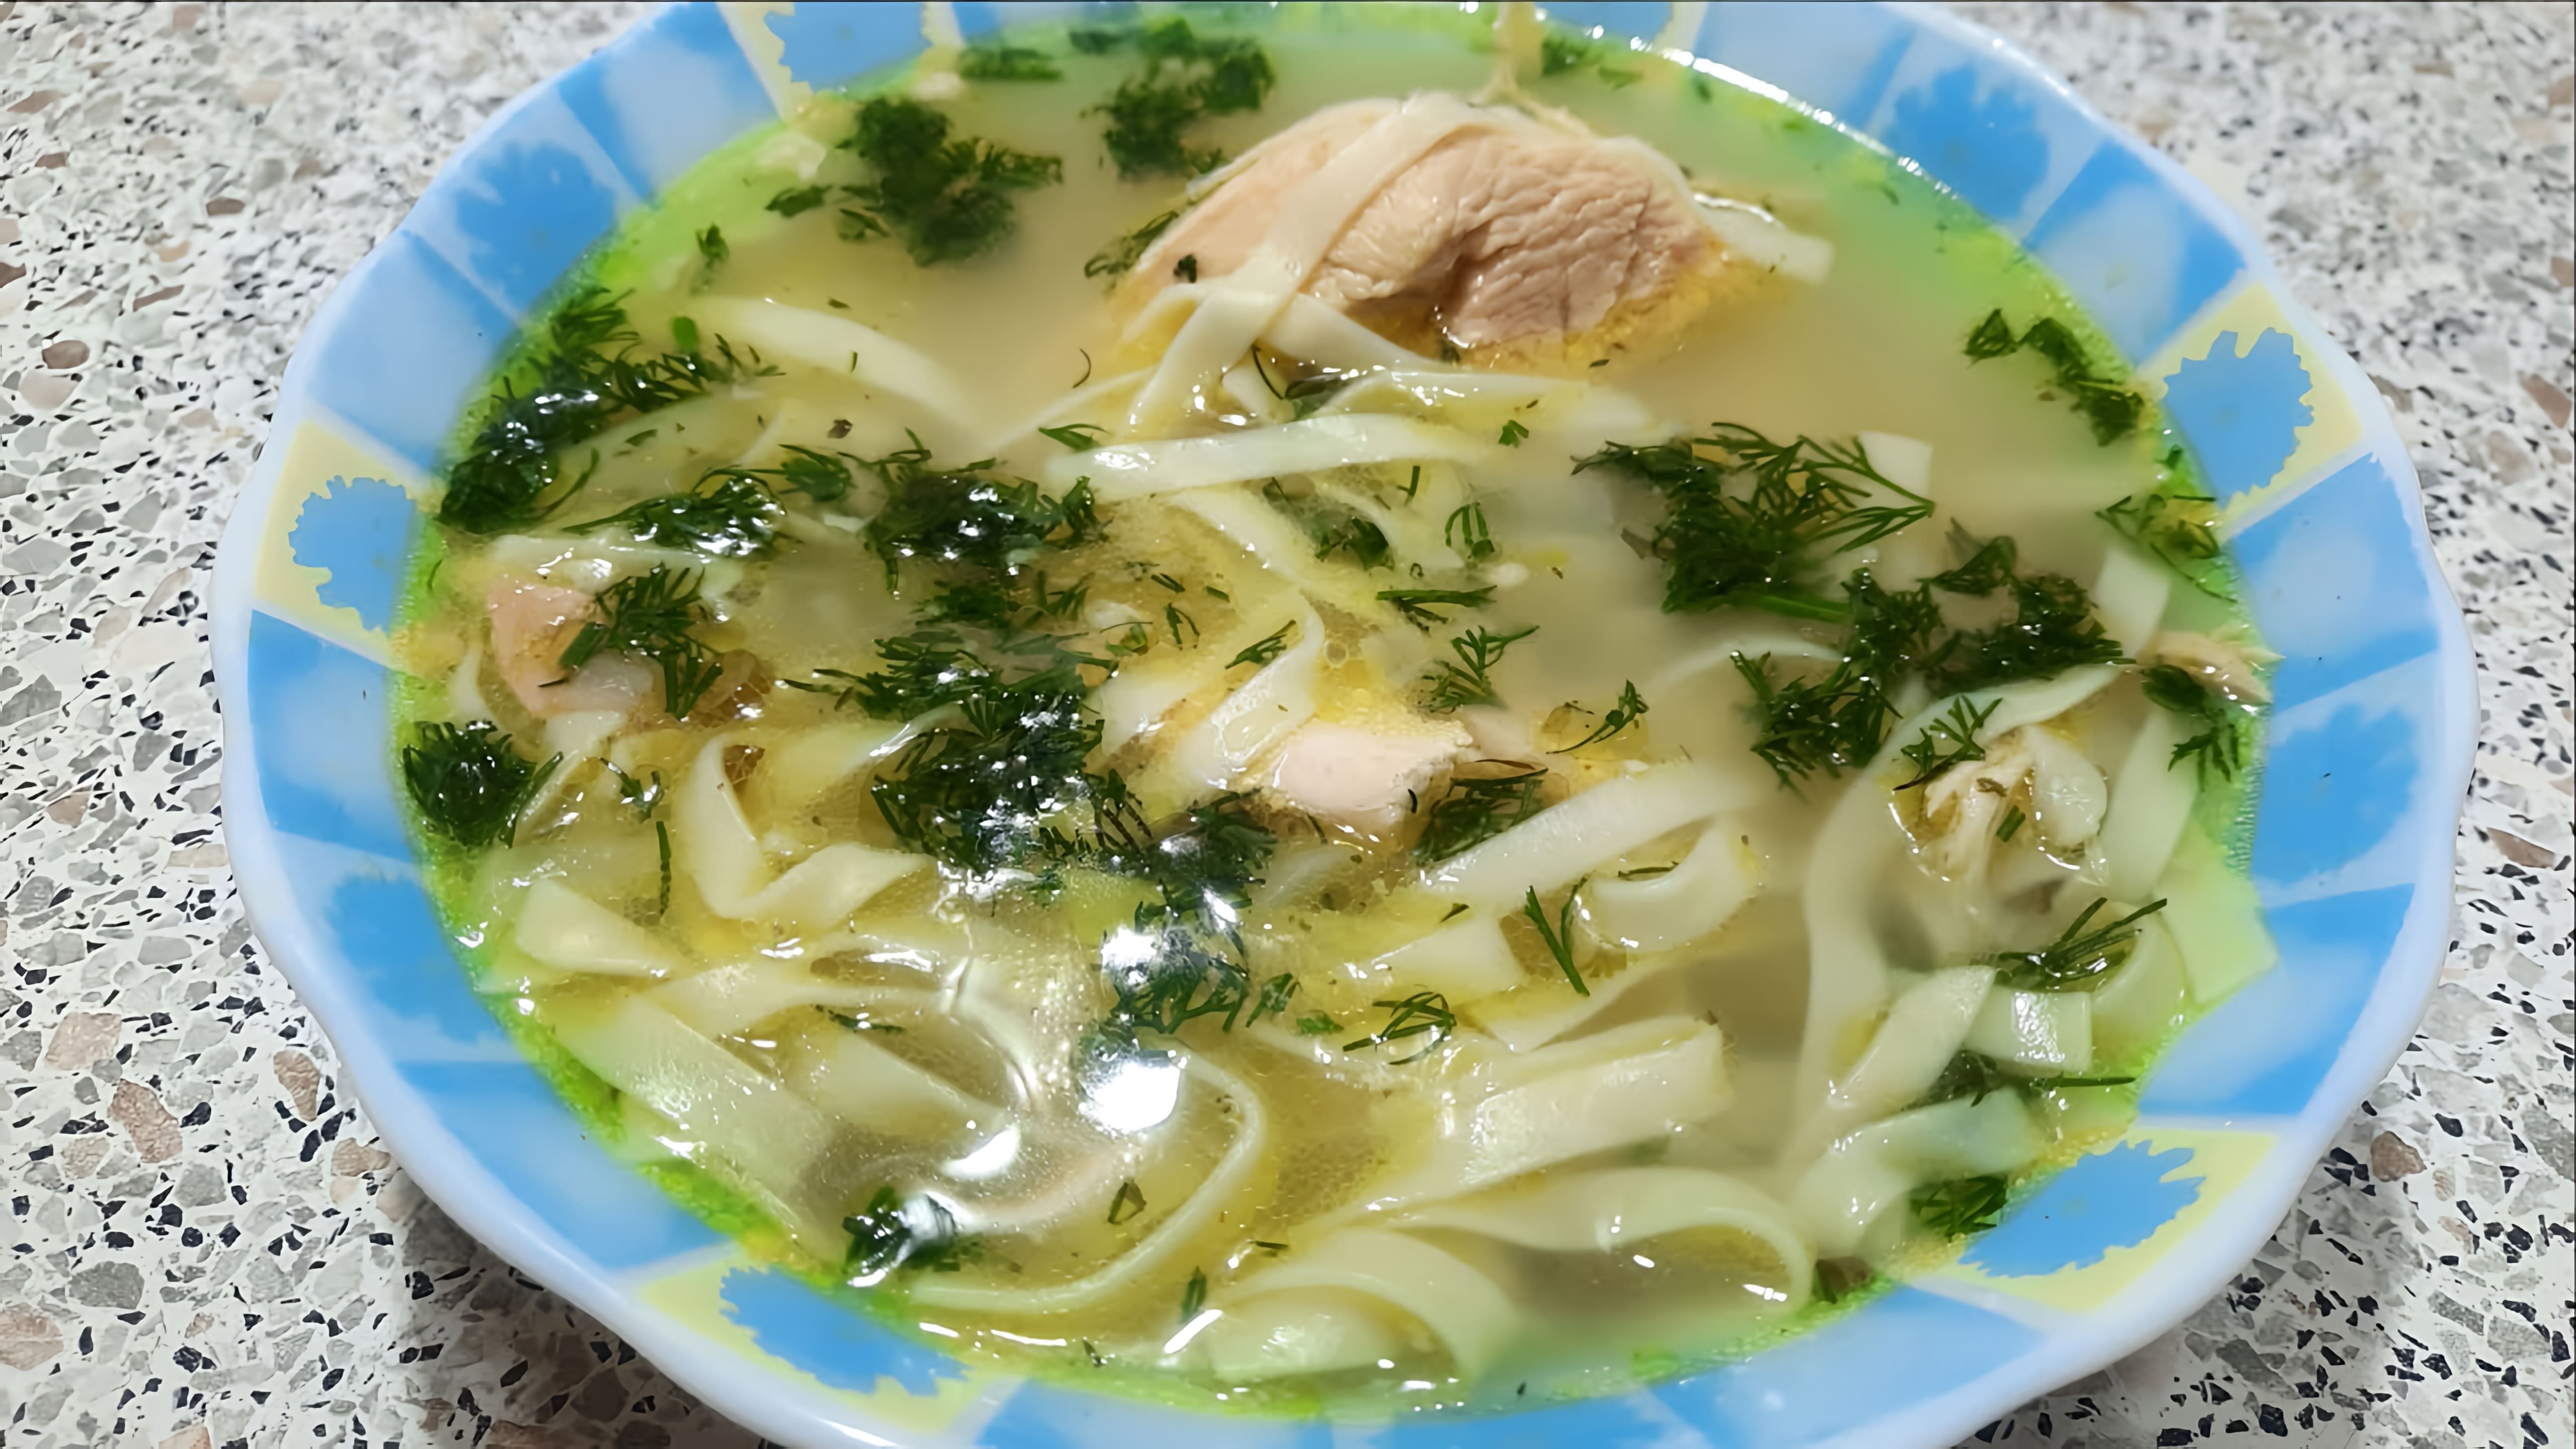 В этом видео демонстрируется процесс приготовления супа-лапши с курицей по-домашнему